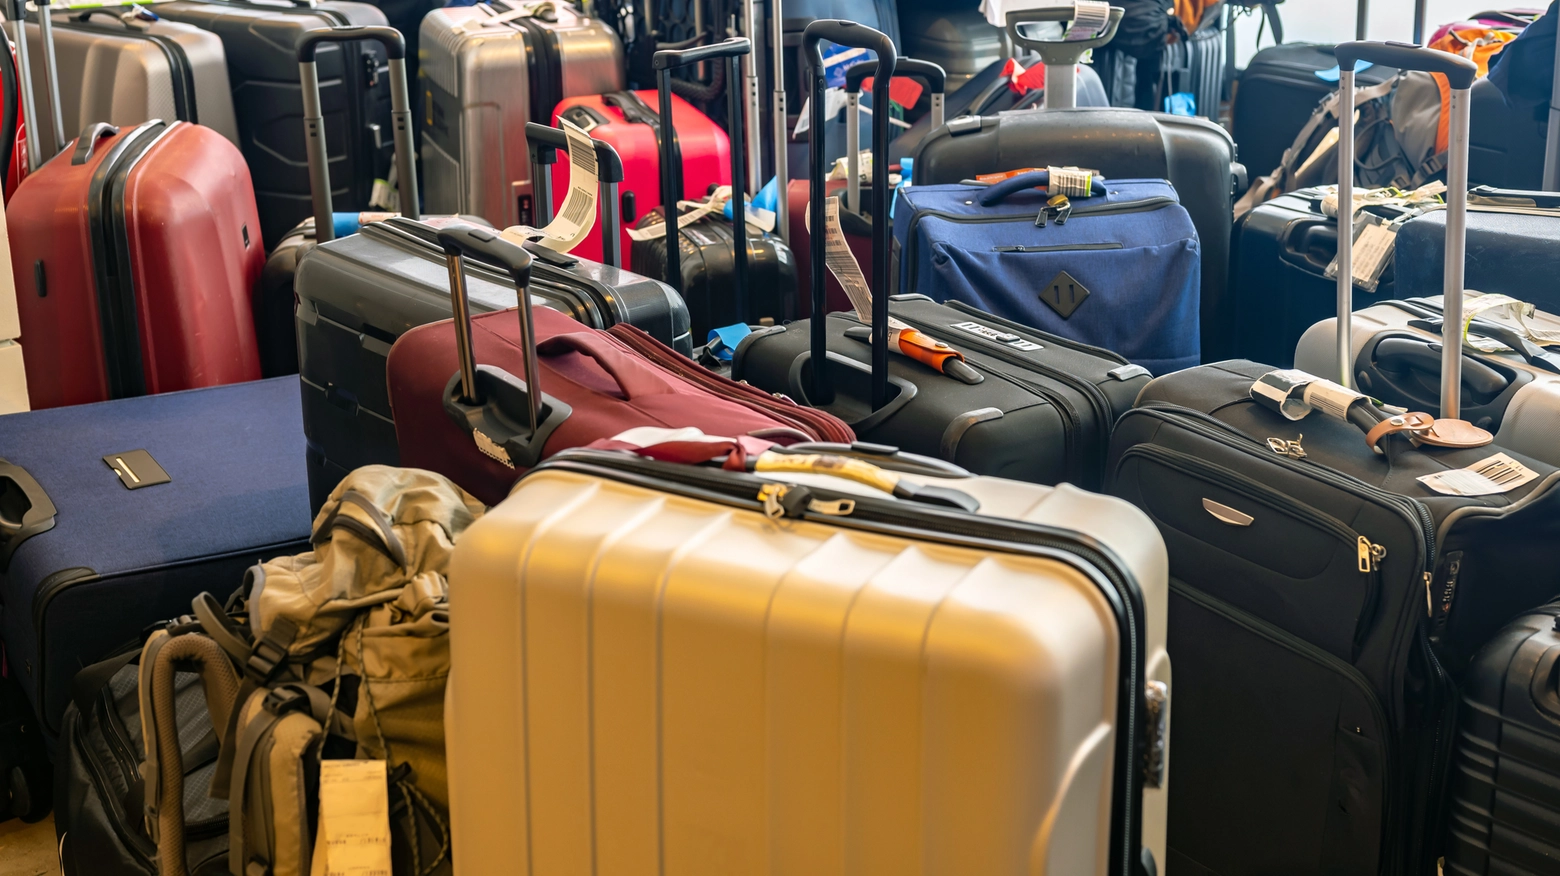 Bagagli smarriti negli aeroporti: in aumento la domanda di polizze assicurative